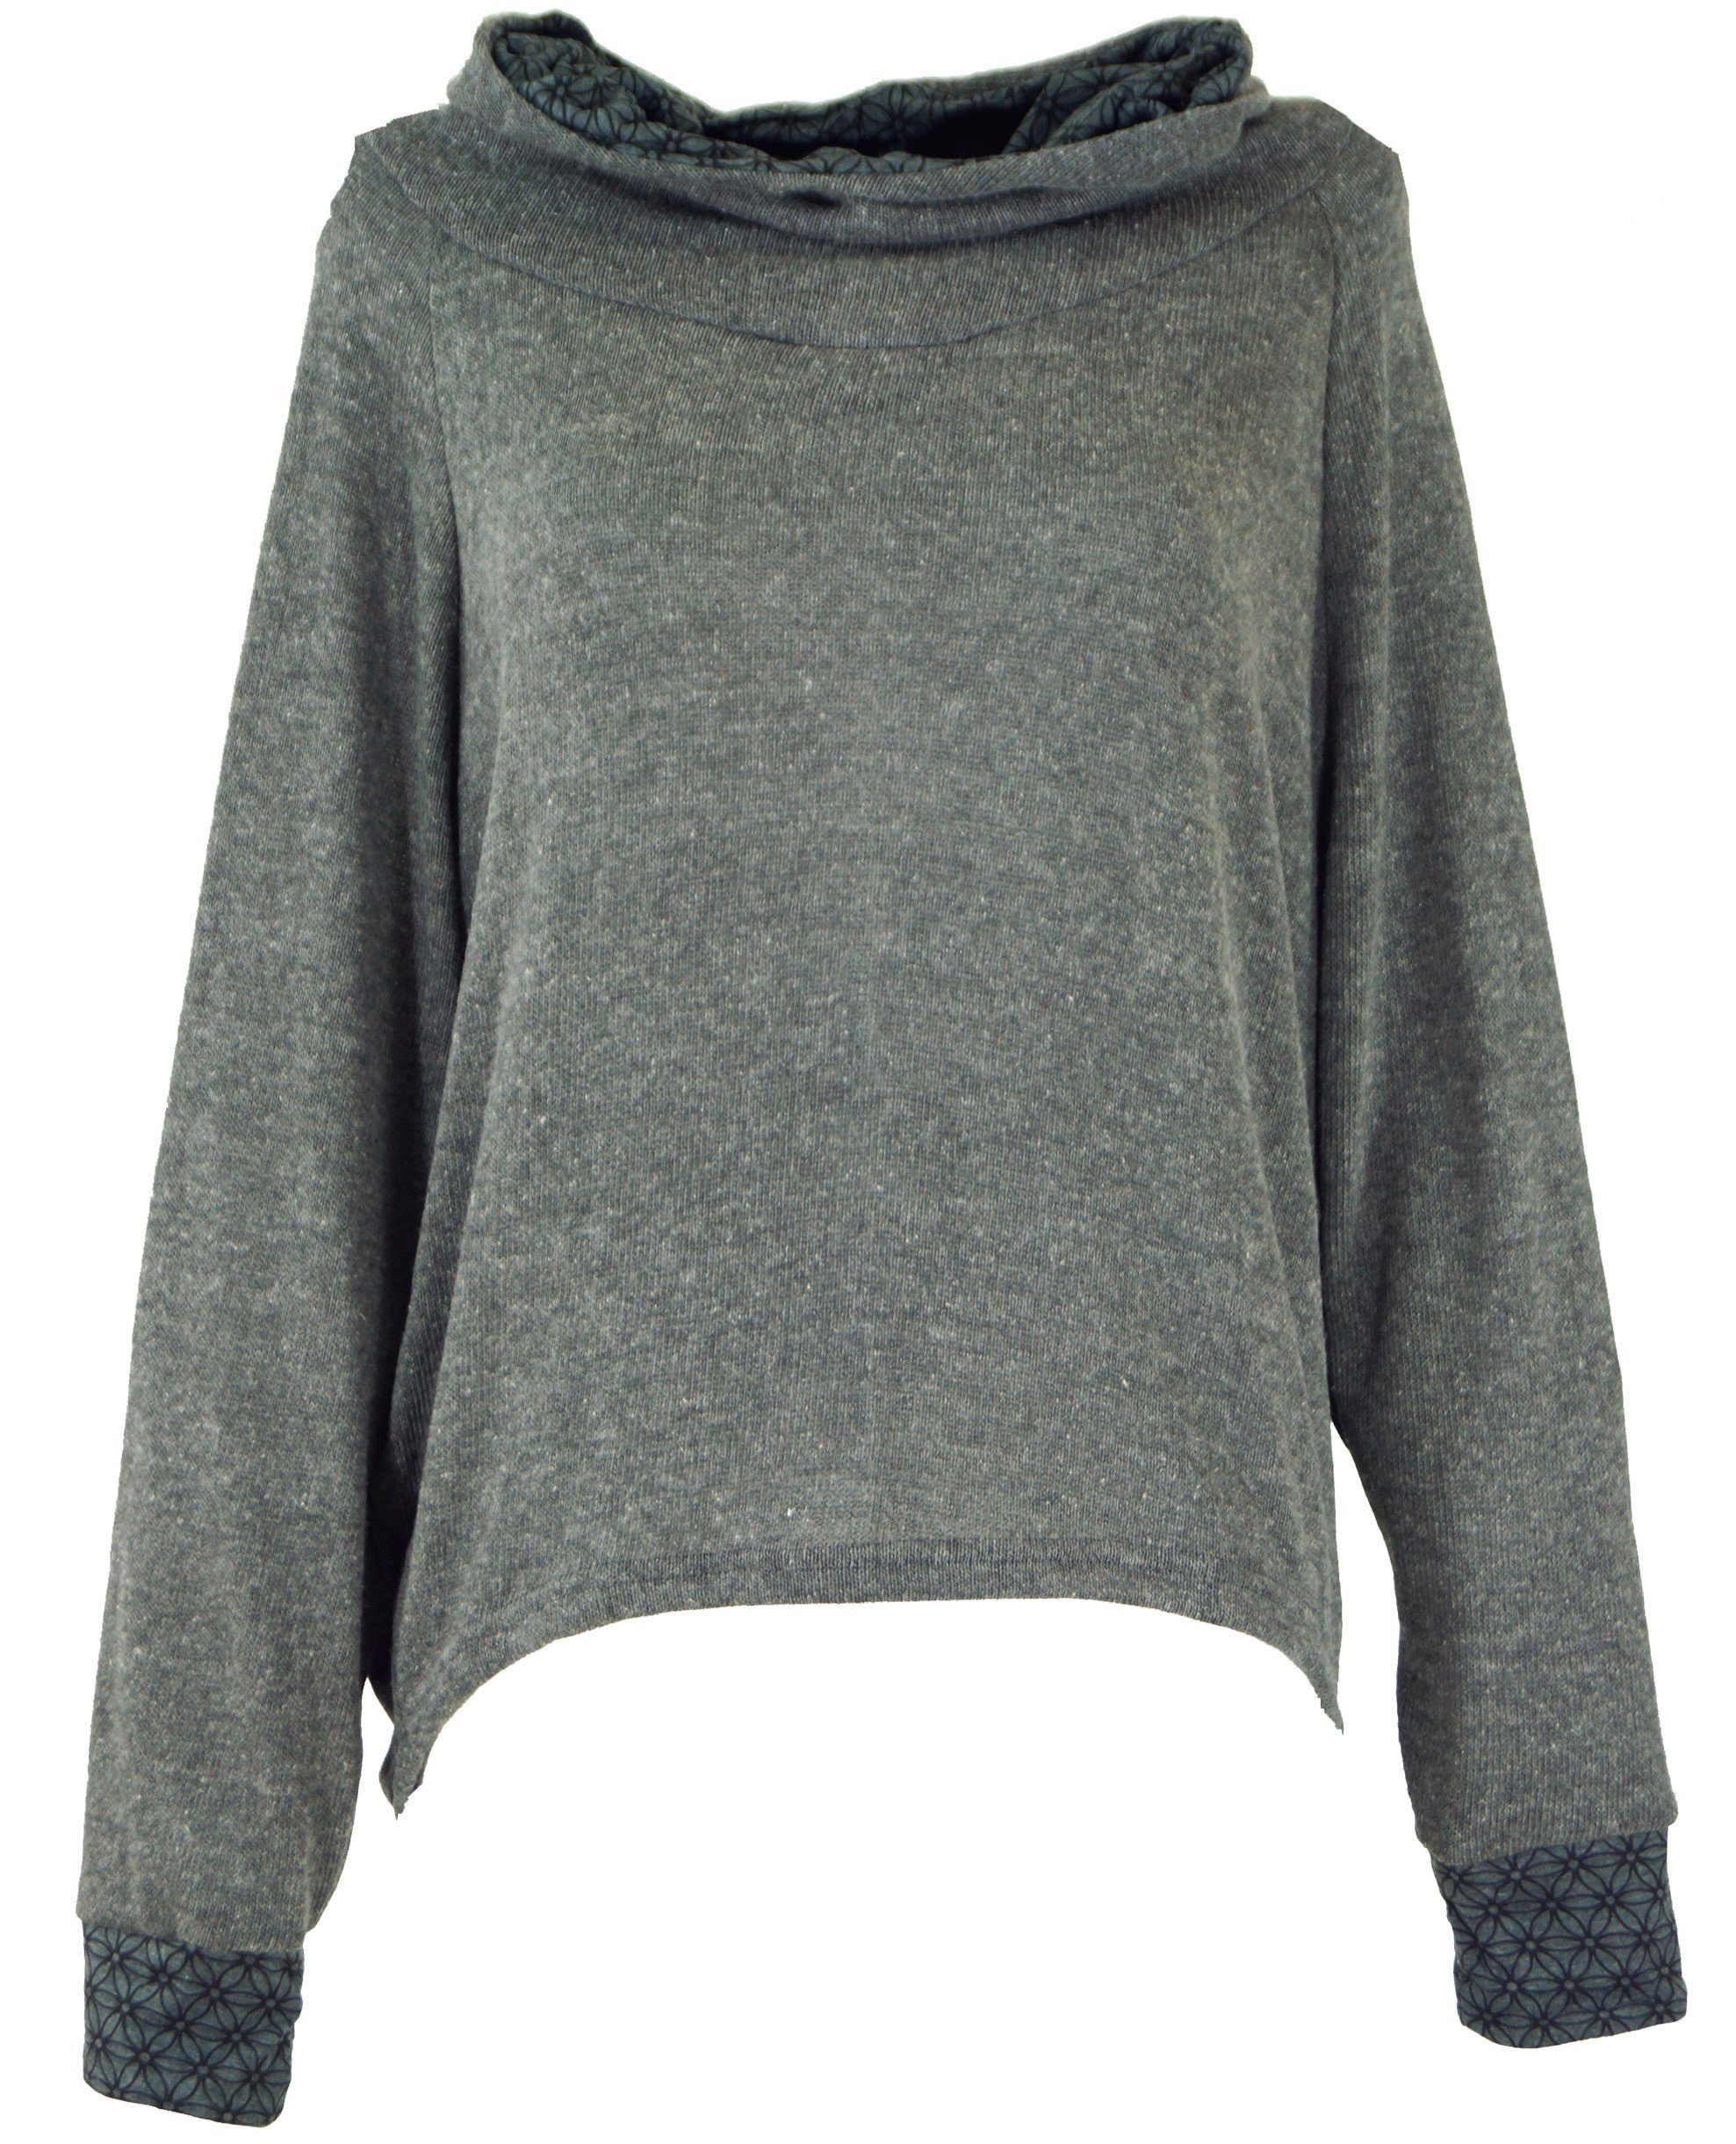 Pullover, Bekleidung Hoody, Sweatshirt, grau Longsleeve -.. Kapuzenpullover Guru-Shop alternative